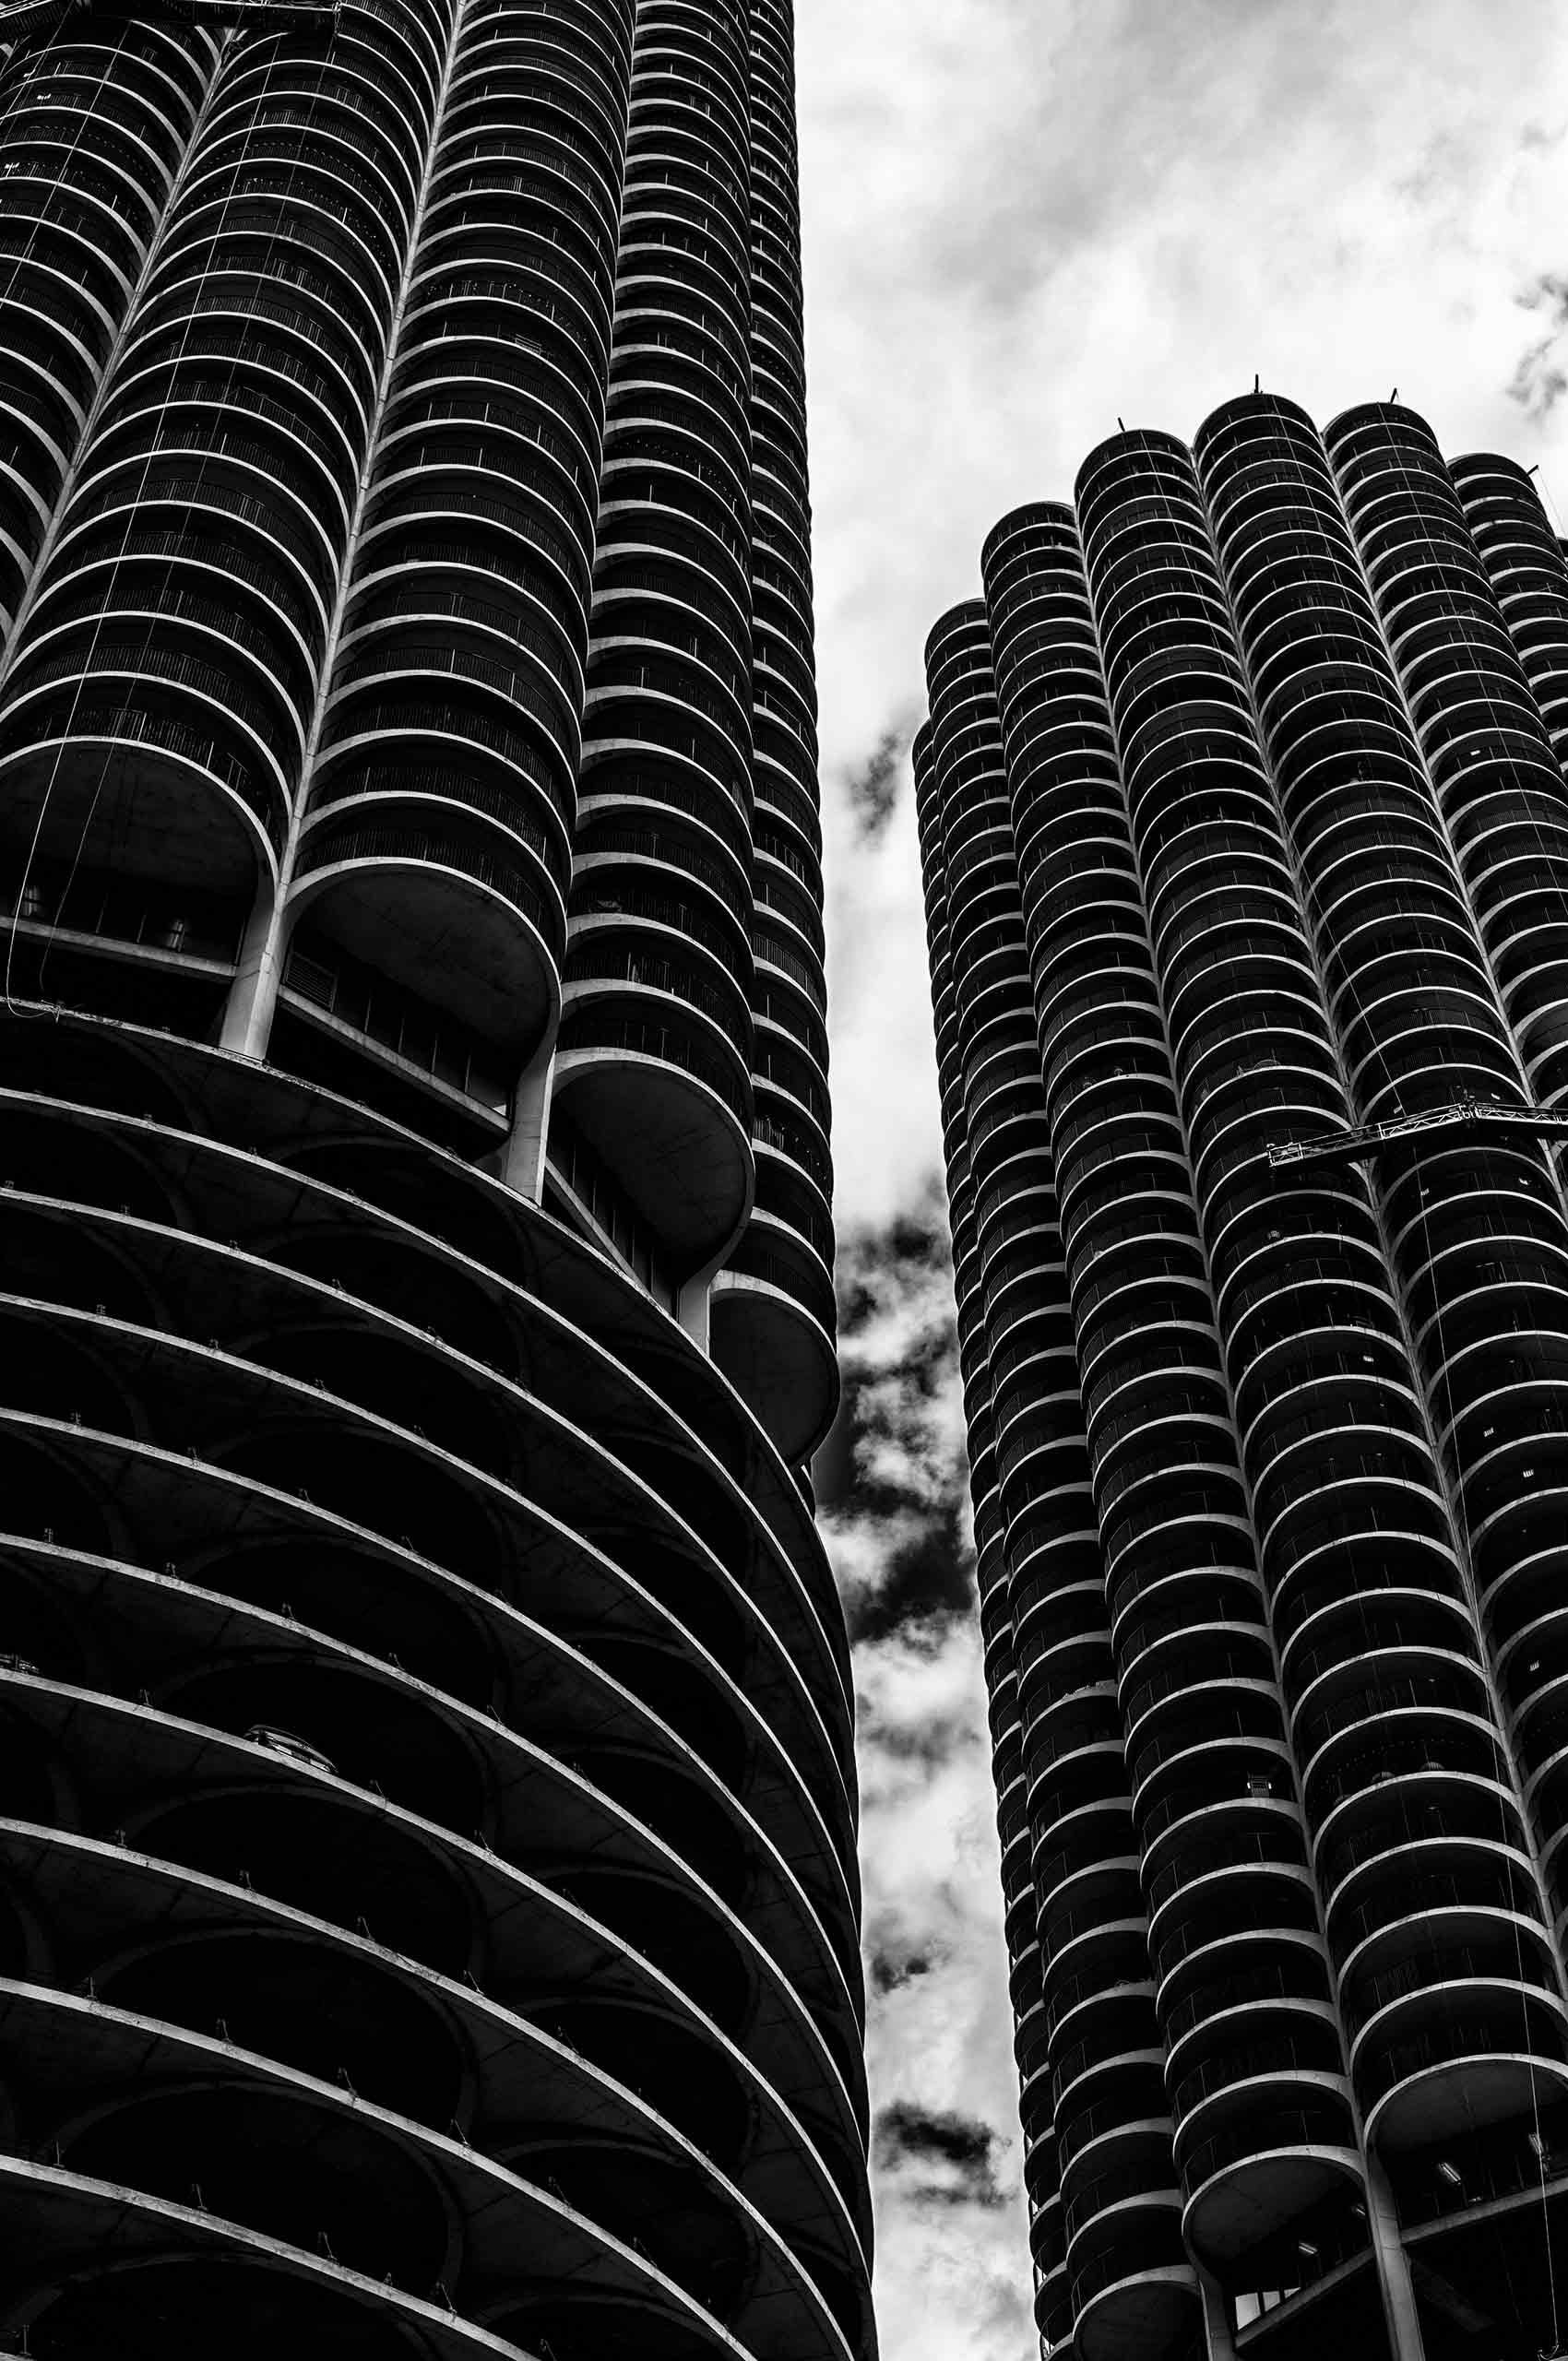 Marina City, Chicago